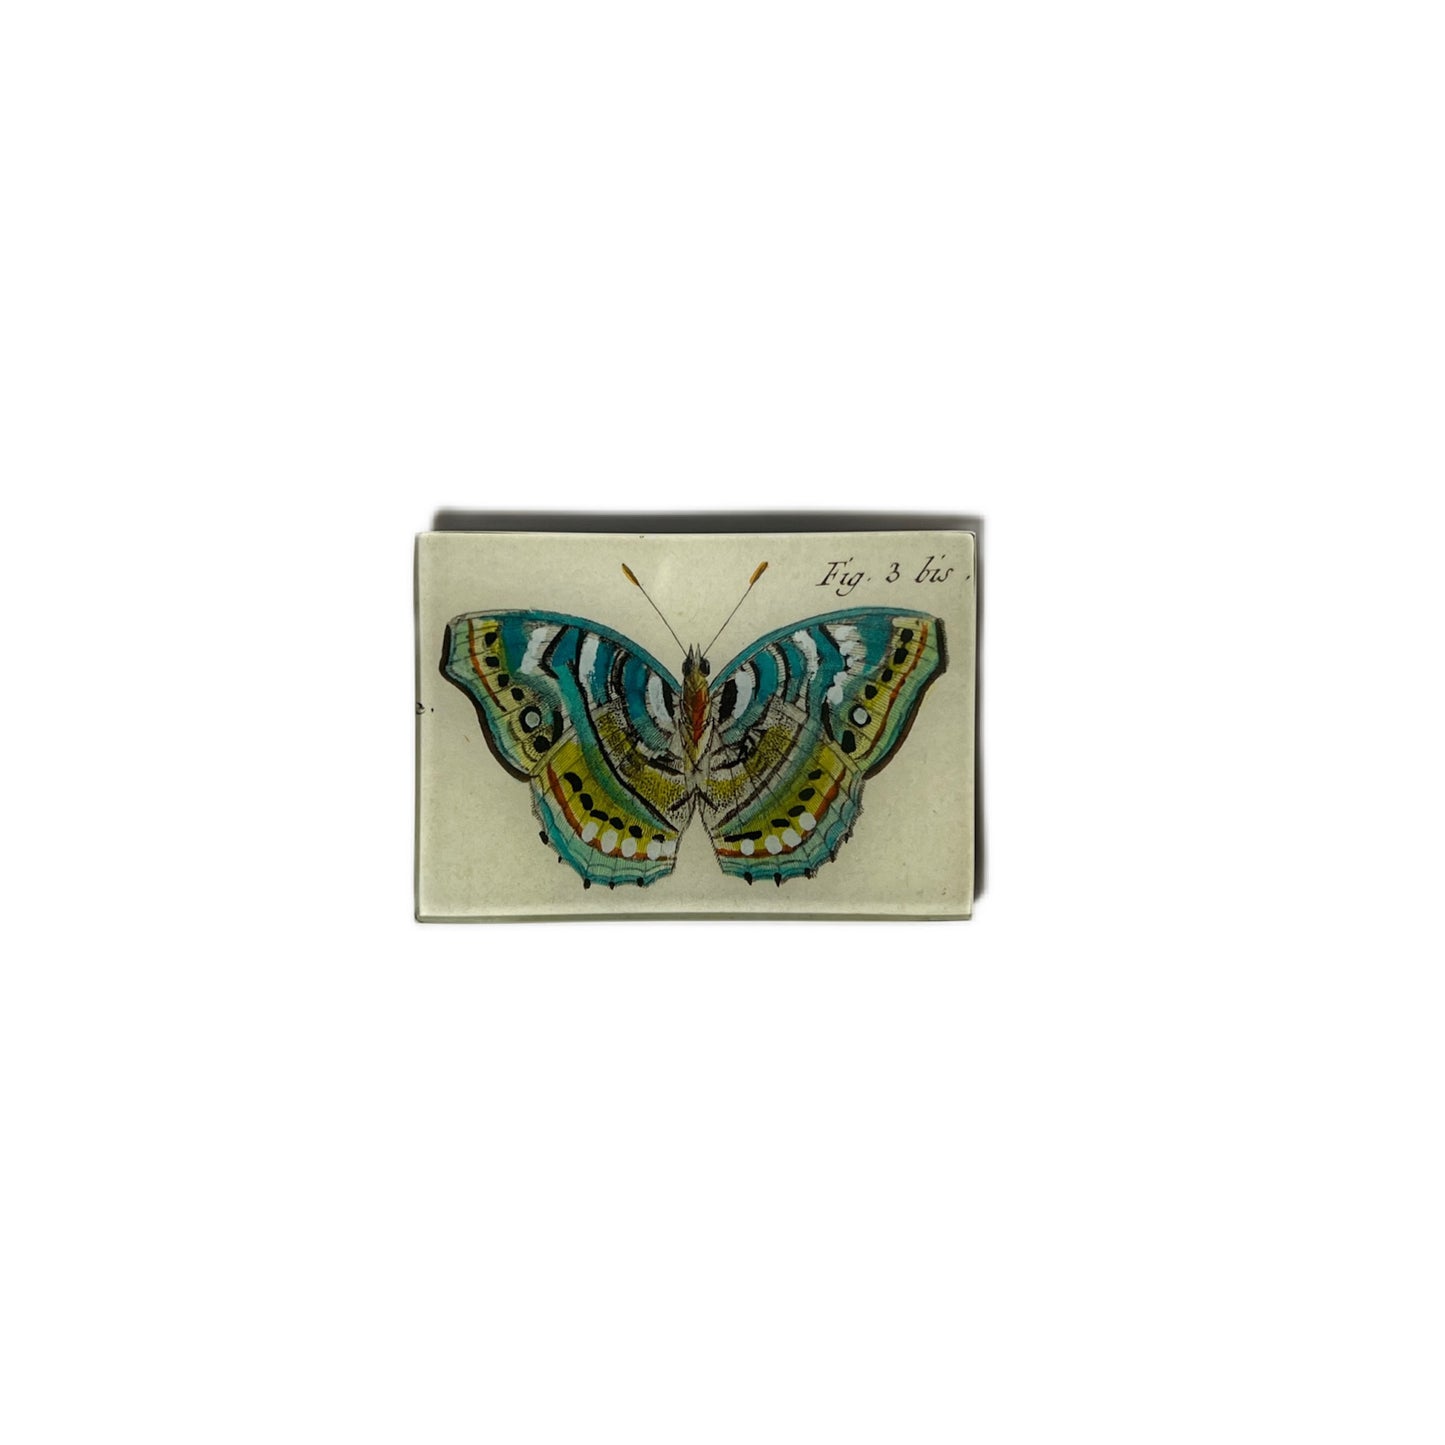 【JOHN DERIAN】デコパージュプレート Blue Green Butterfly Fig. 3 bis